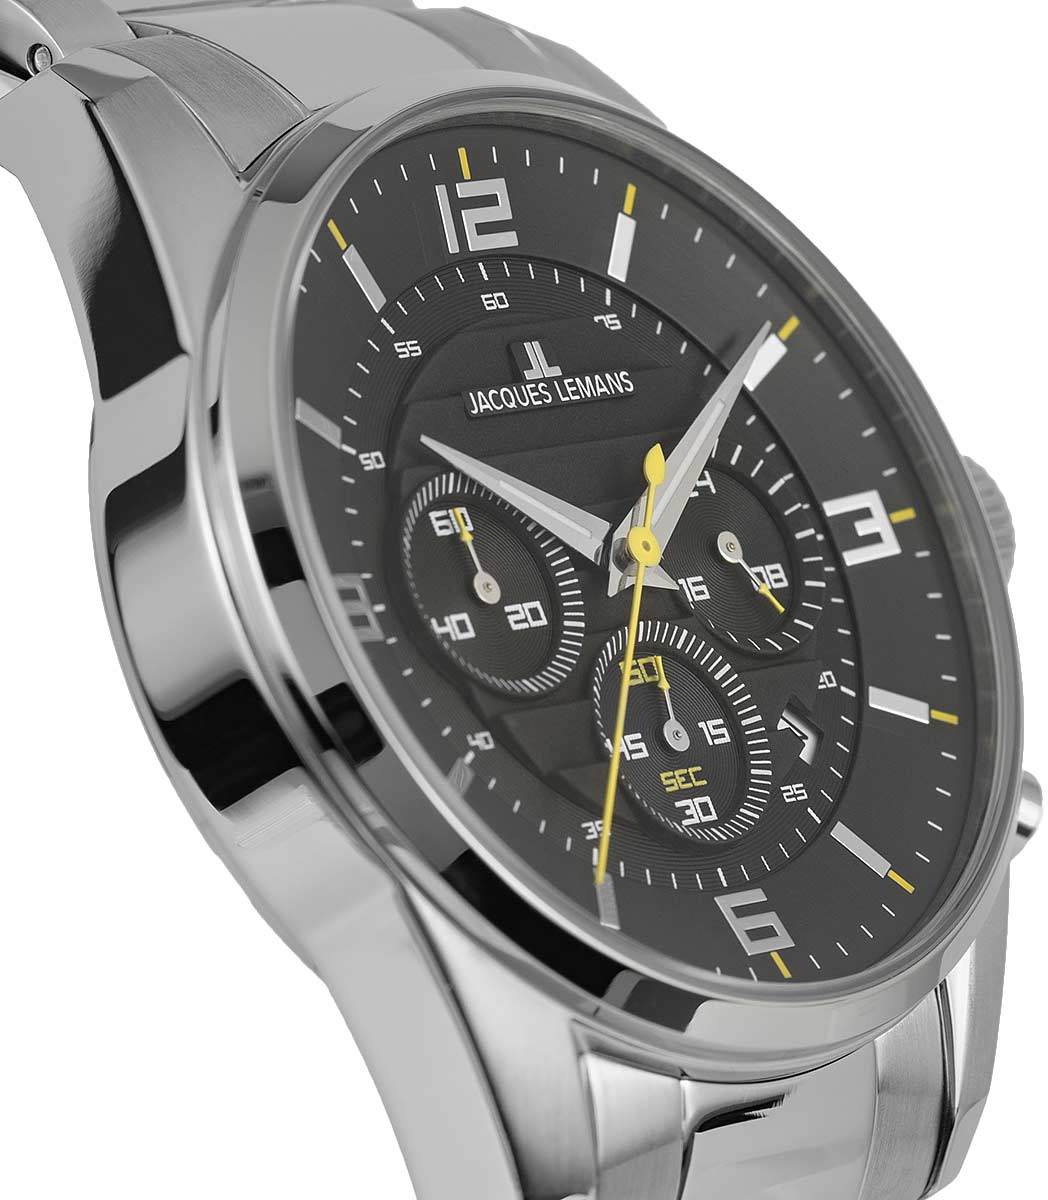 Наручные часы Jacques Lemans 1-2118D — купить в интернет-магазине  AllTime.ru по лучшей цене, фото, характеристики, инструкция, описание